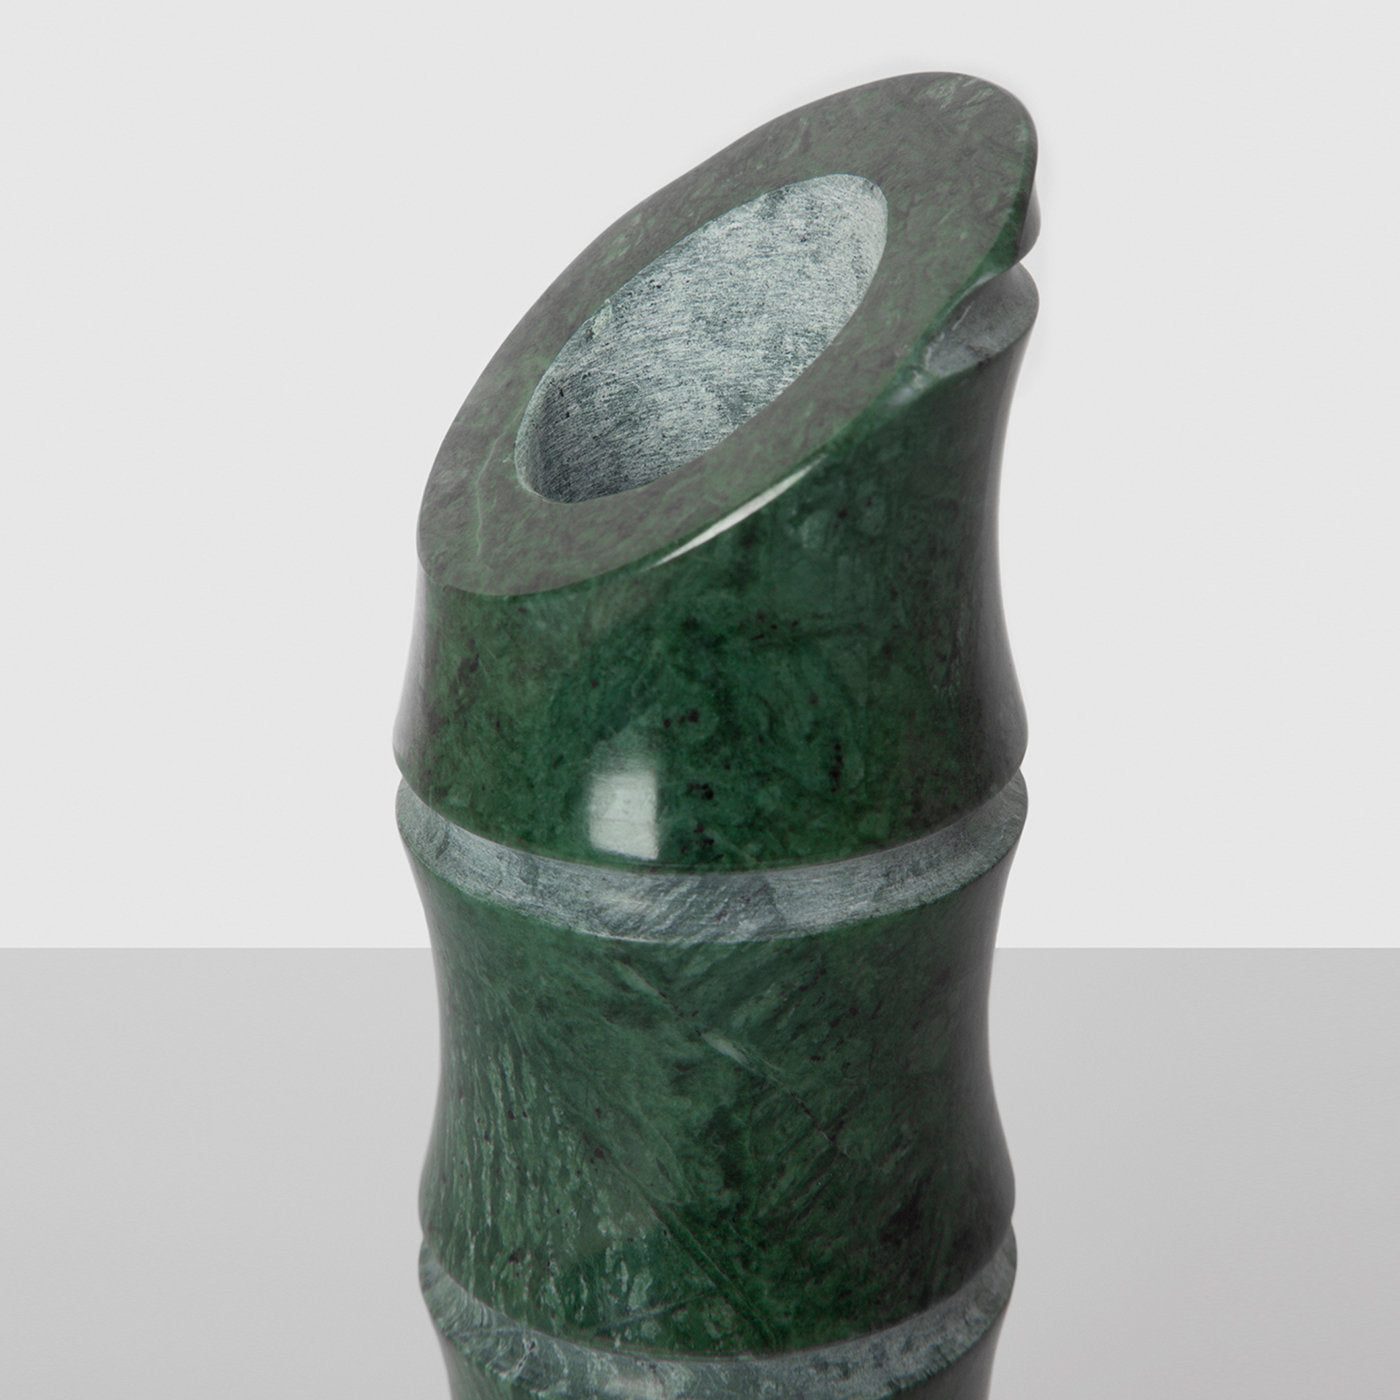 Kadomatsu Medium Green Guatemala Vase by Michele Chiossi - Alternative view 1